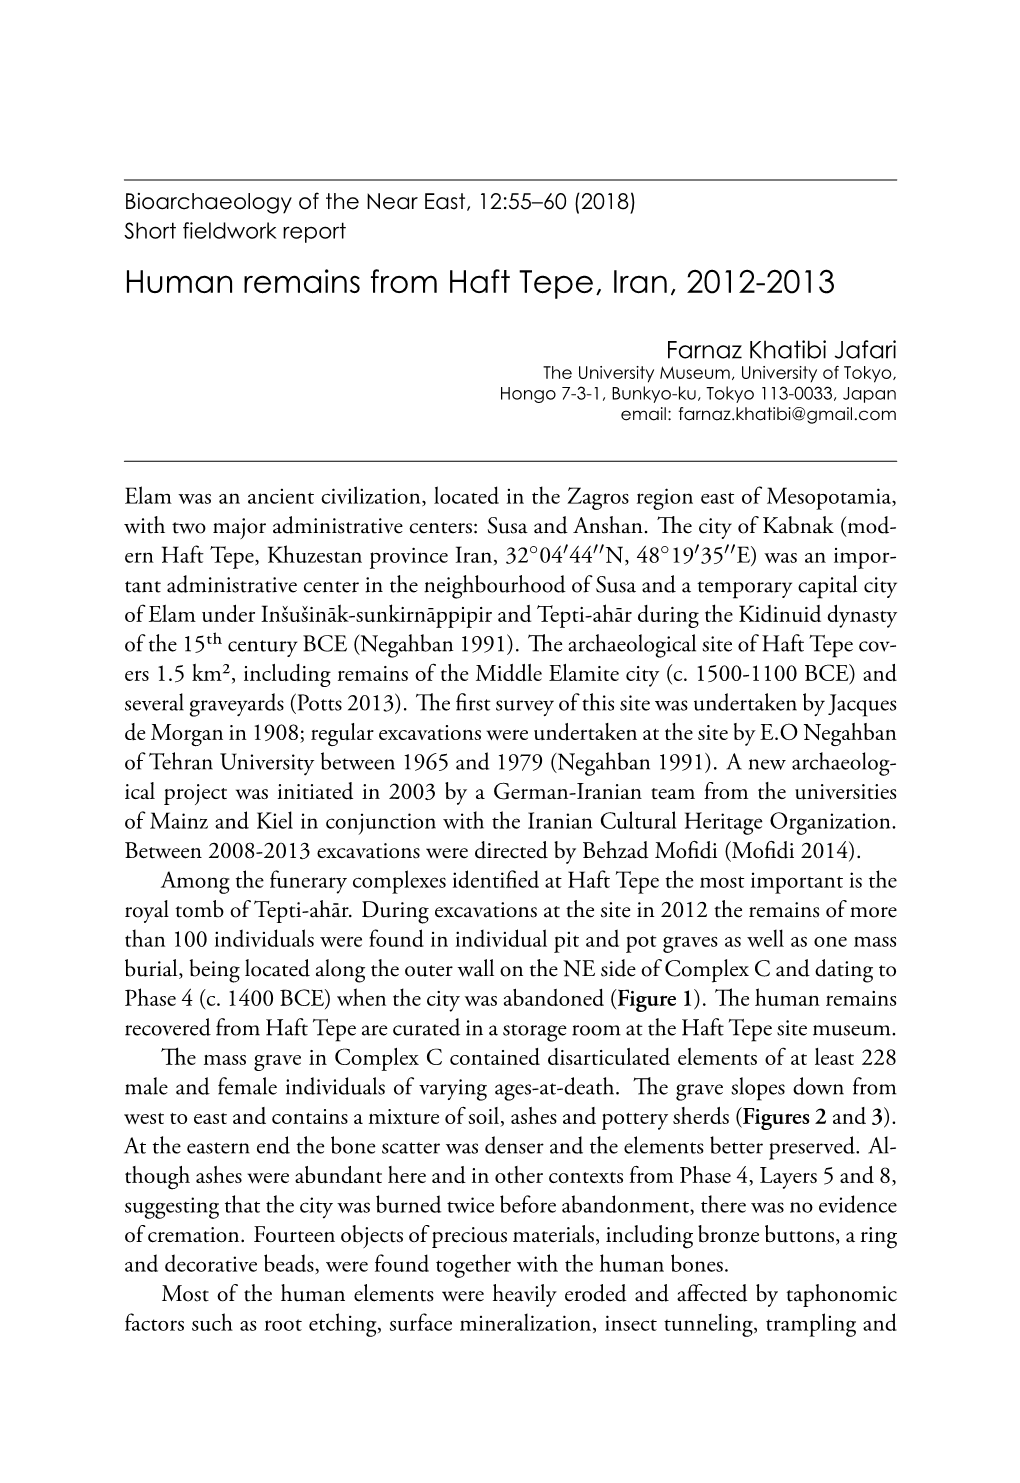 Short Fieldwork Report. Human Remains from Haft Tepe, Iran, 2012-2013